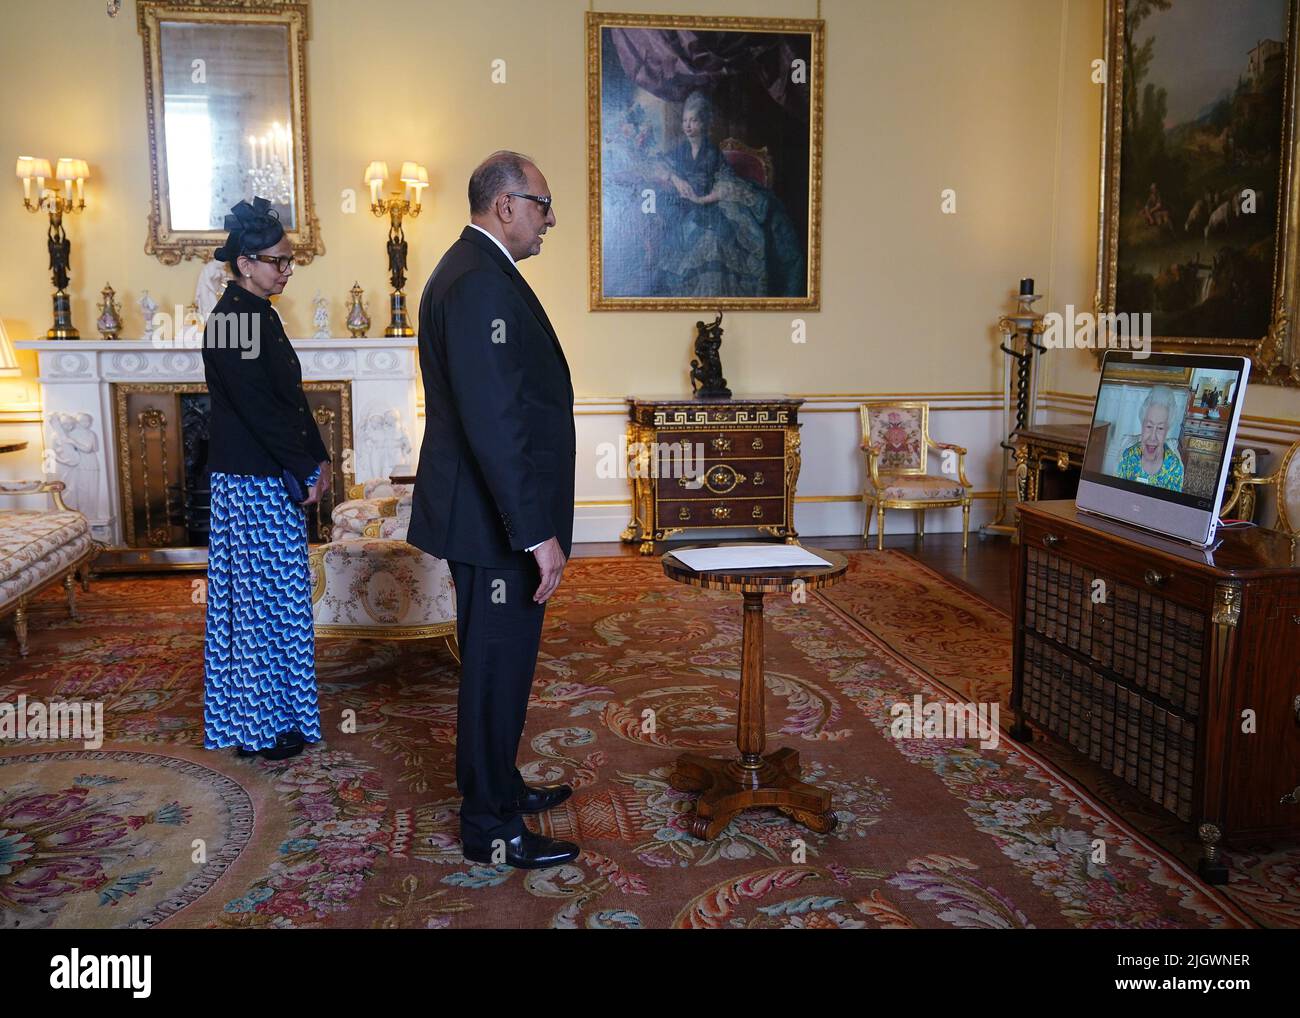 Königin Elizabeth II, die sich im Schloss Windsor aufhielt, erscheint auf einem Videolink während einer virtuellen Audienz, um Dr. Rajendra Singh, hohe Kommissarin für die Kooperative Republik Guyana, und seine Frau Shakuntala Singh im Buckingham Palace, London, zu empfangen. Bilddatum: Mittwoch, 13. Juli 2022. Stockfoto